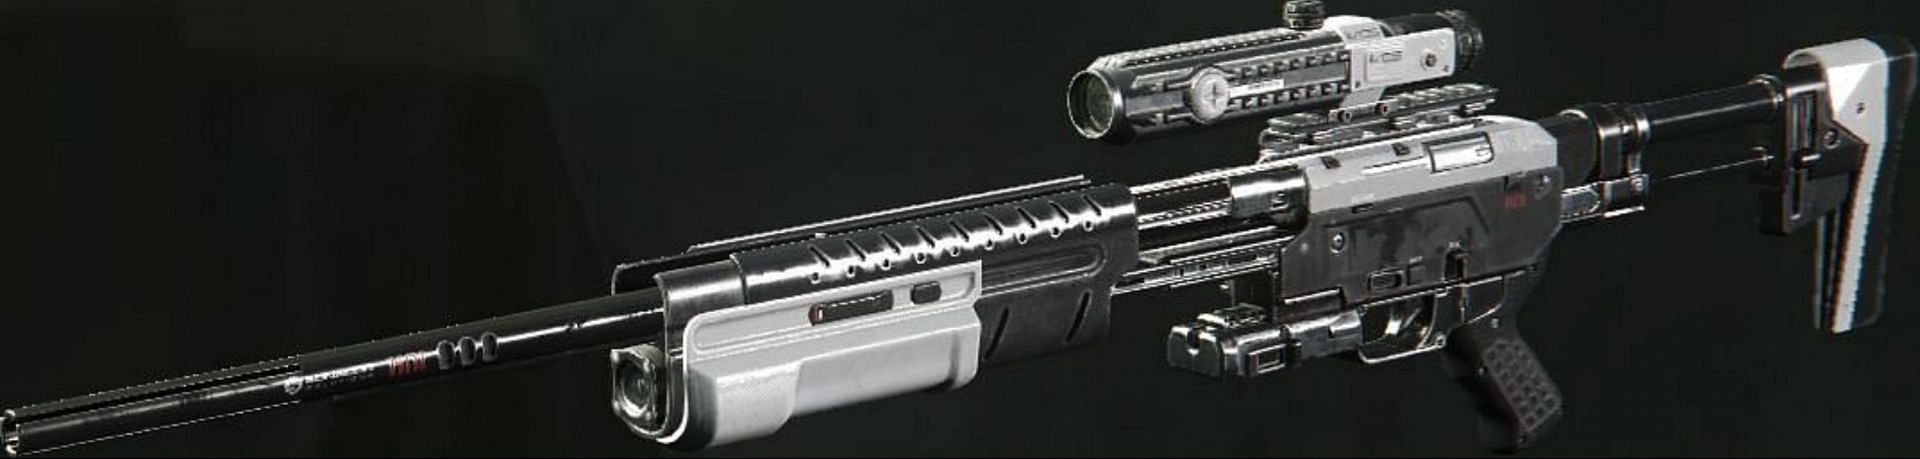 The Proteus Sniper from COD: Infinite Warfare (Image via Activision)